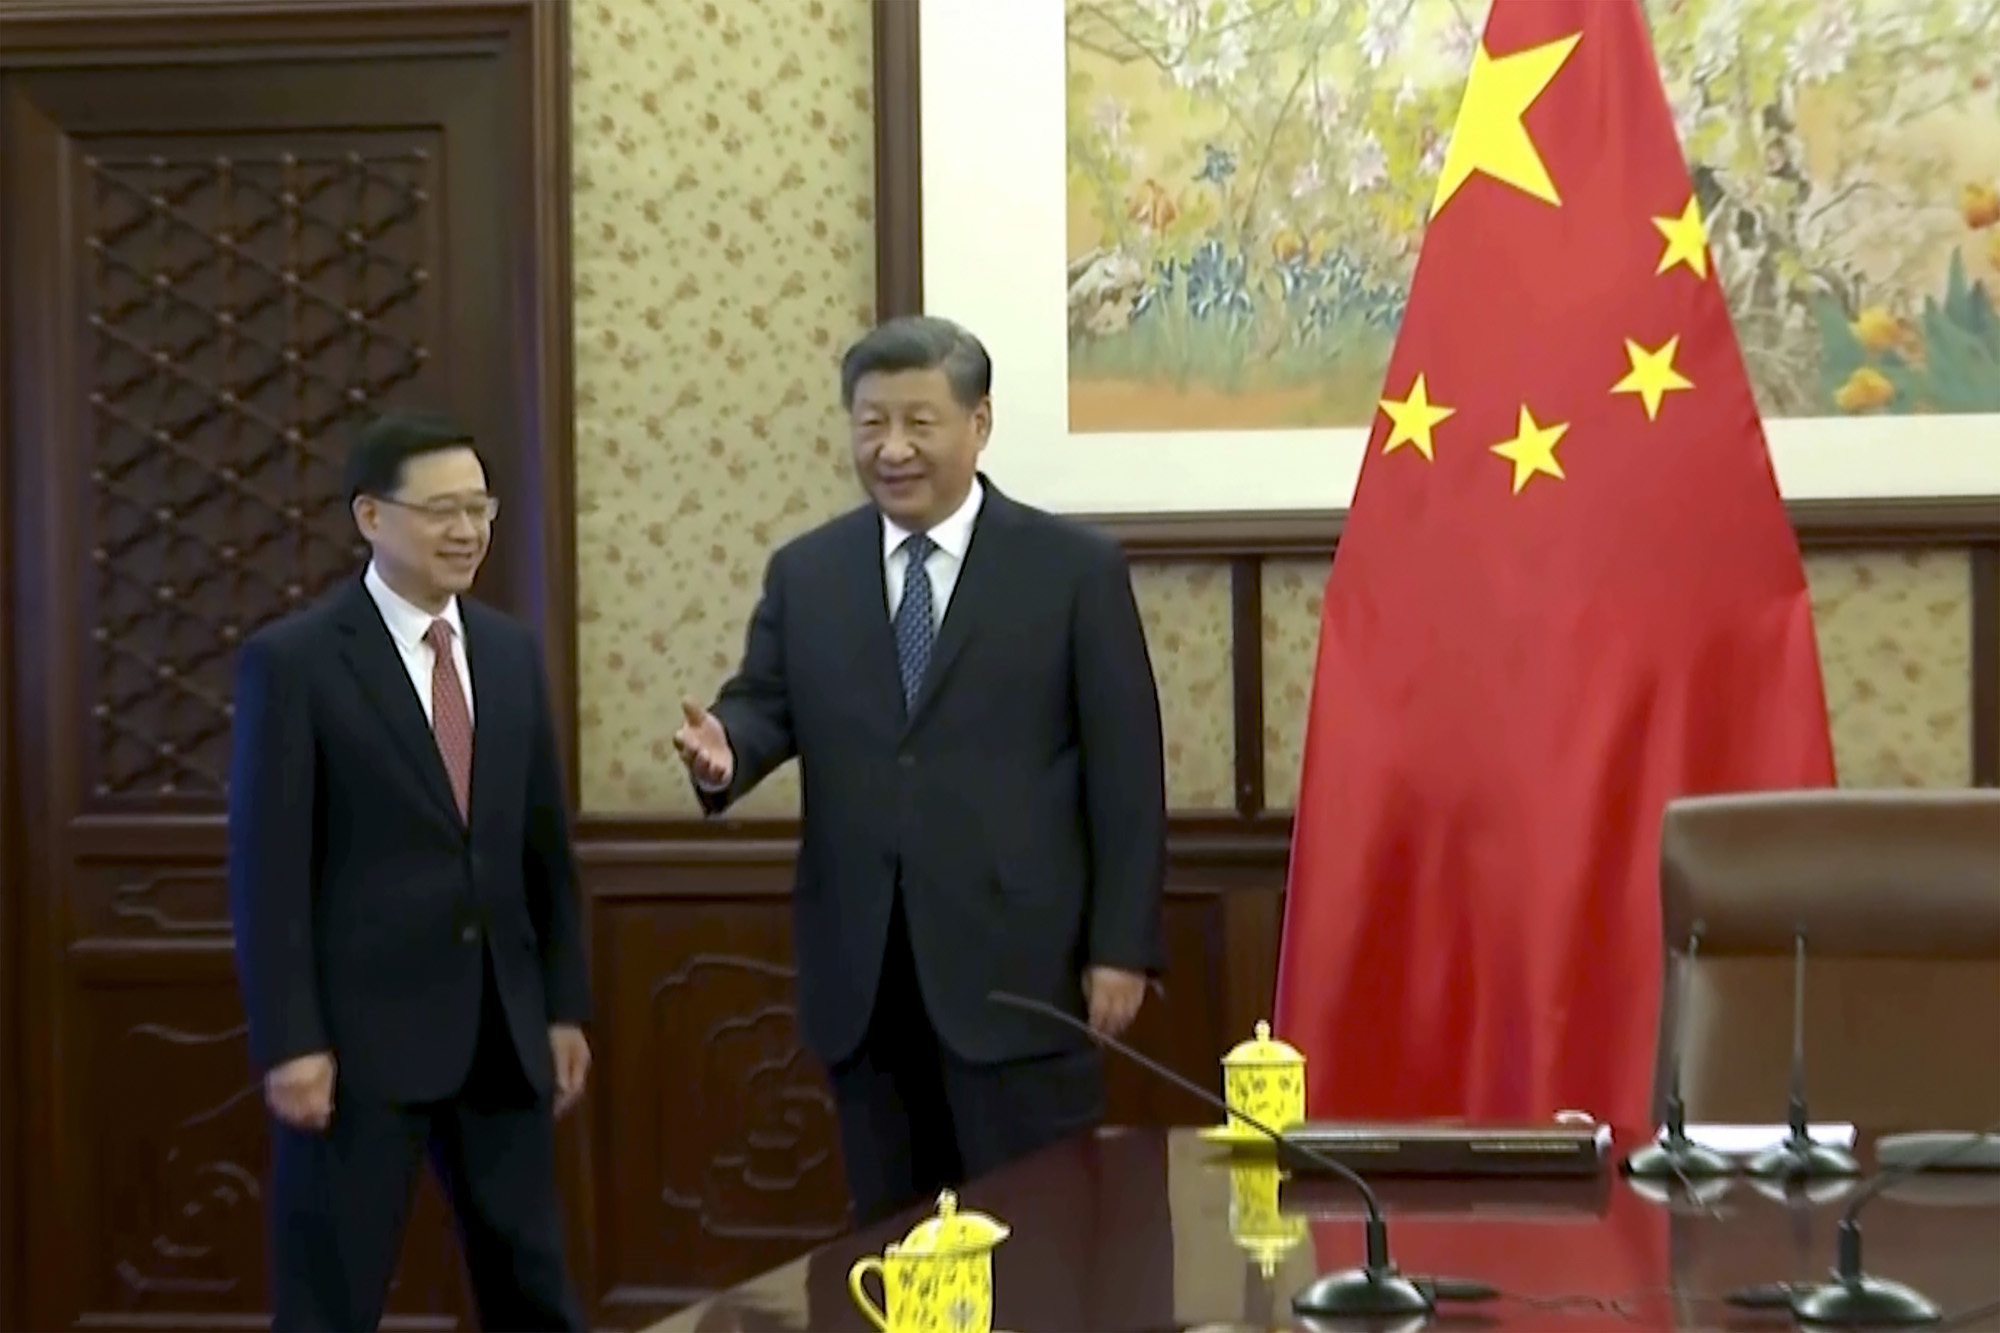 Xi Jinping, right, as he meets John Lee in Beijing, Dec. 23.